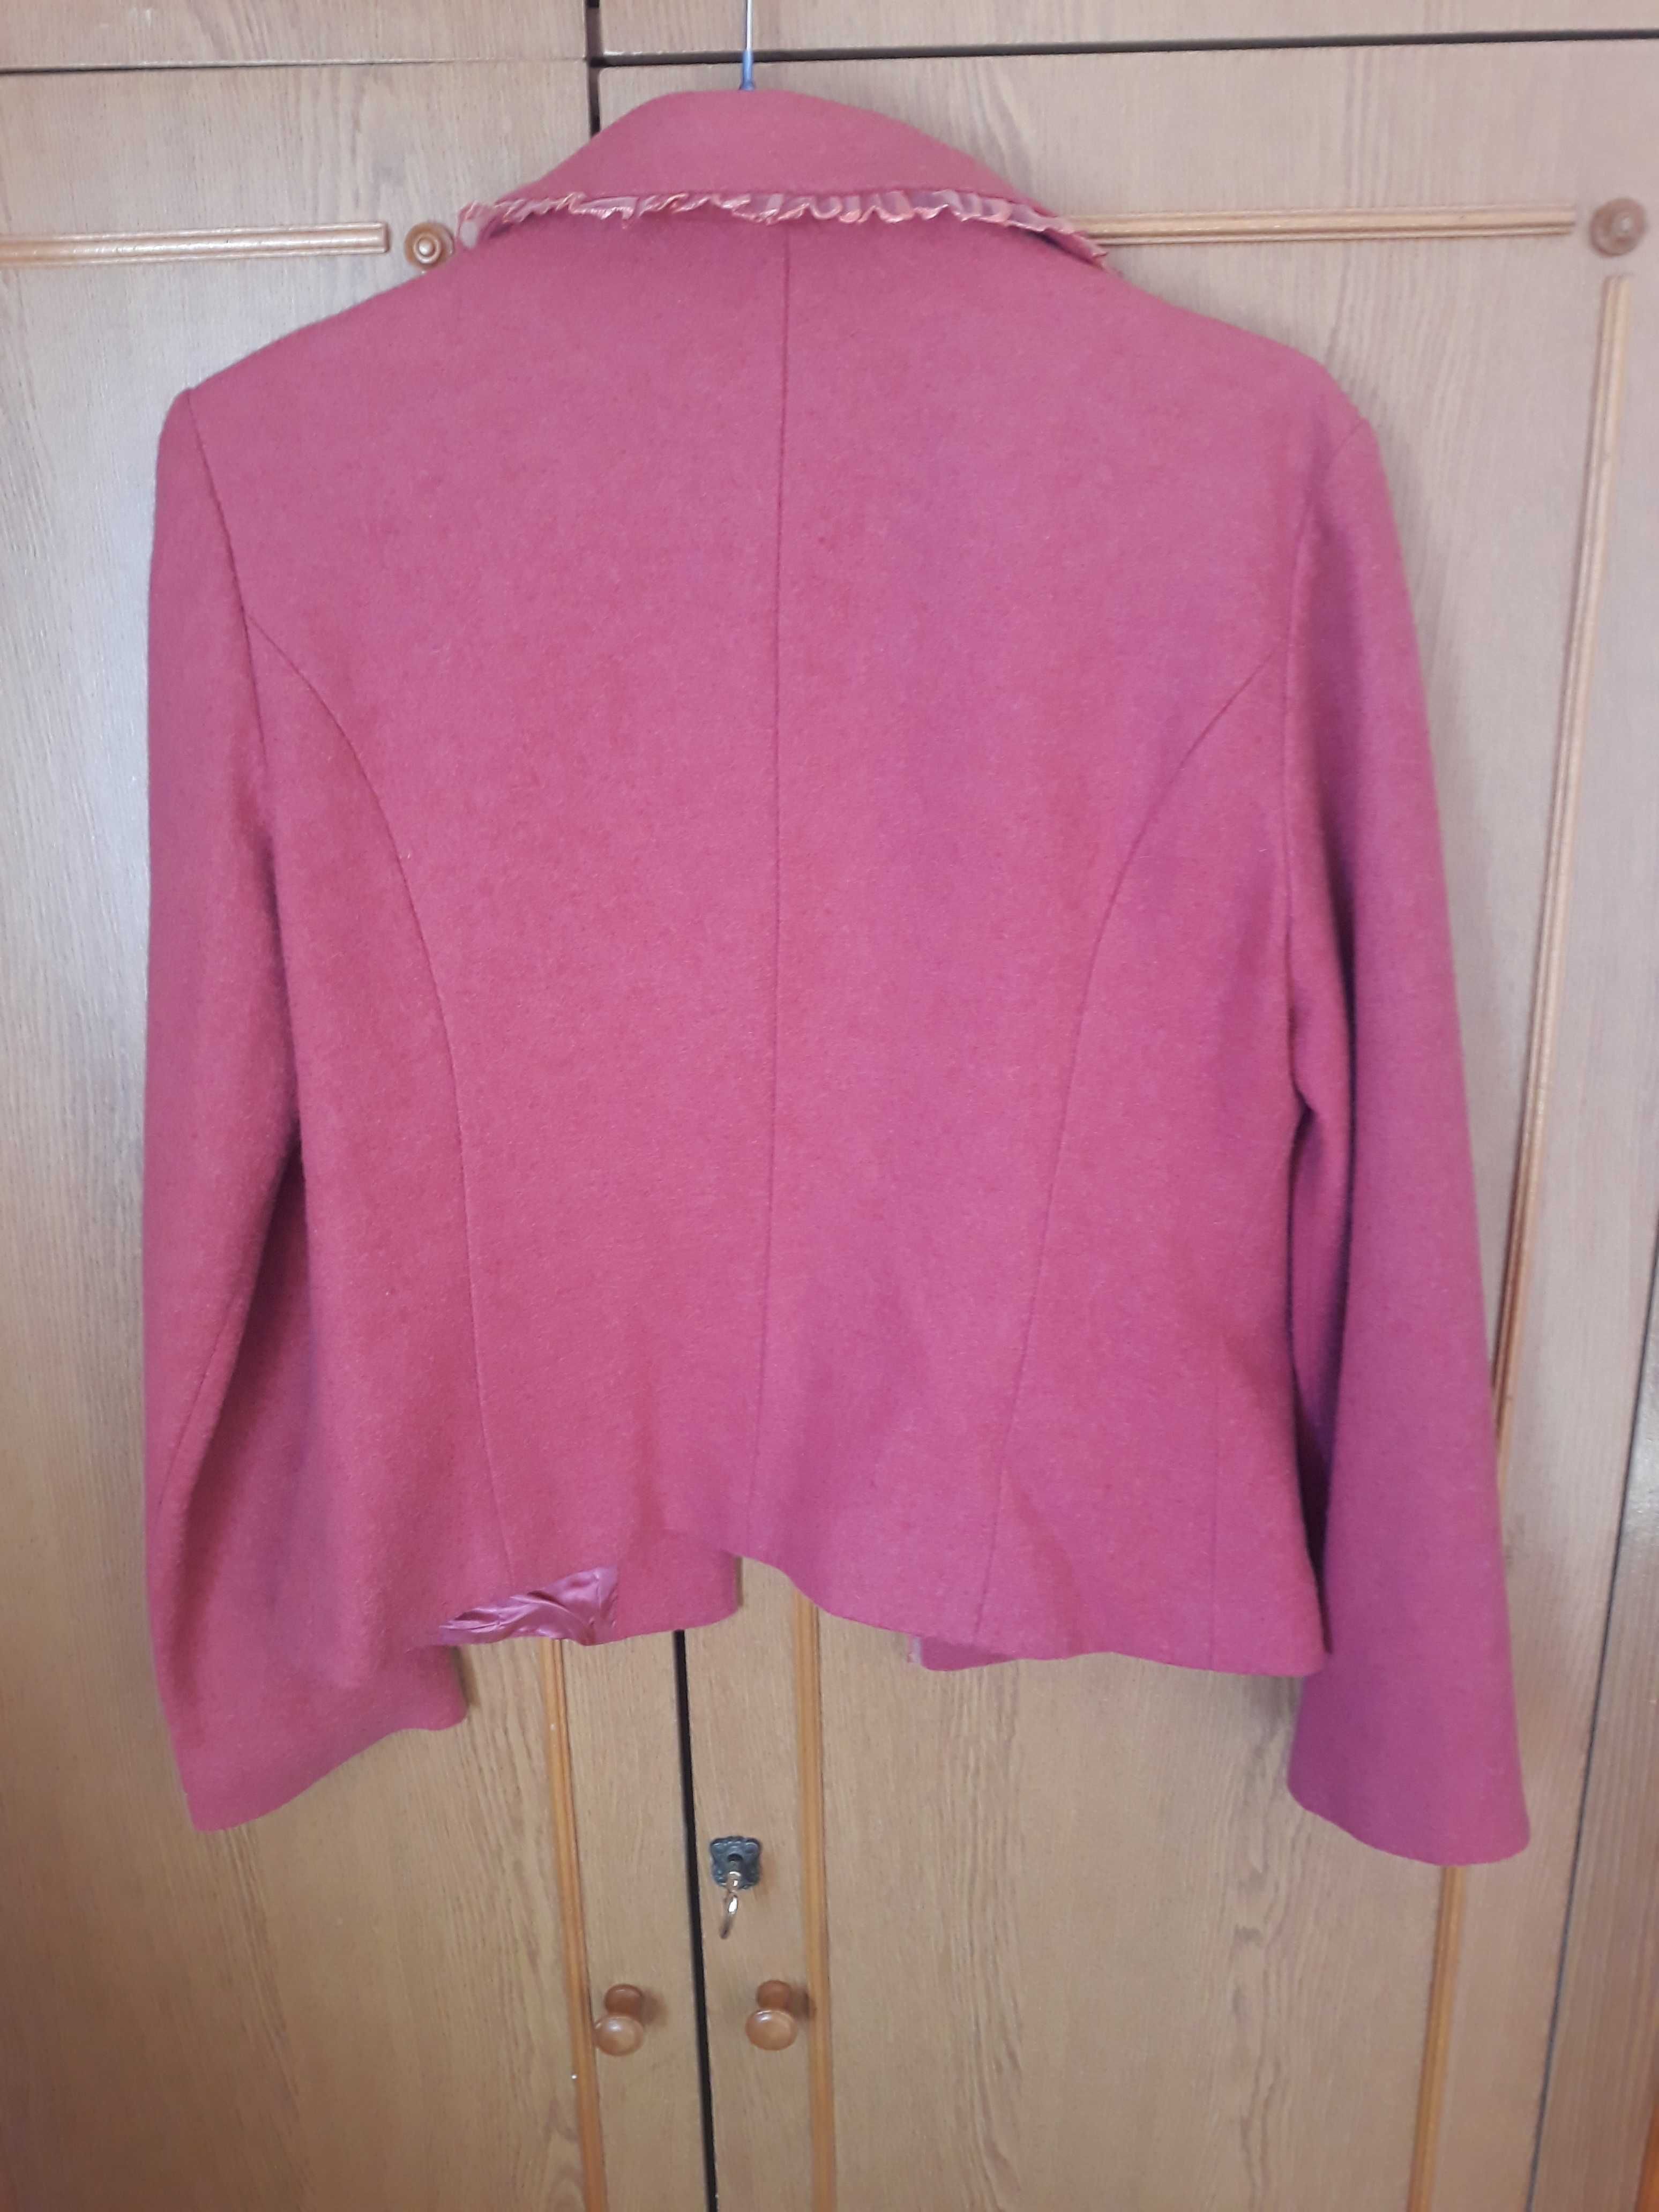 Шерстяной пиджак кораллового цвета на рост 165 см